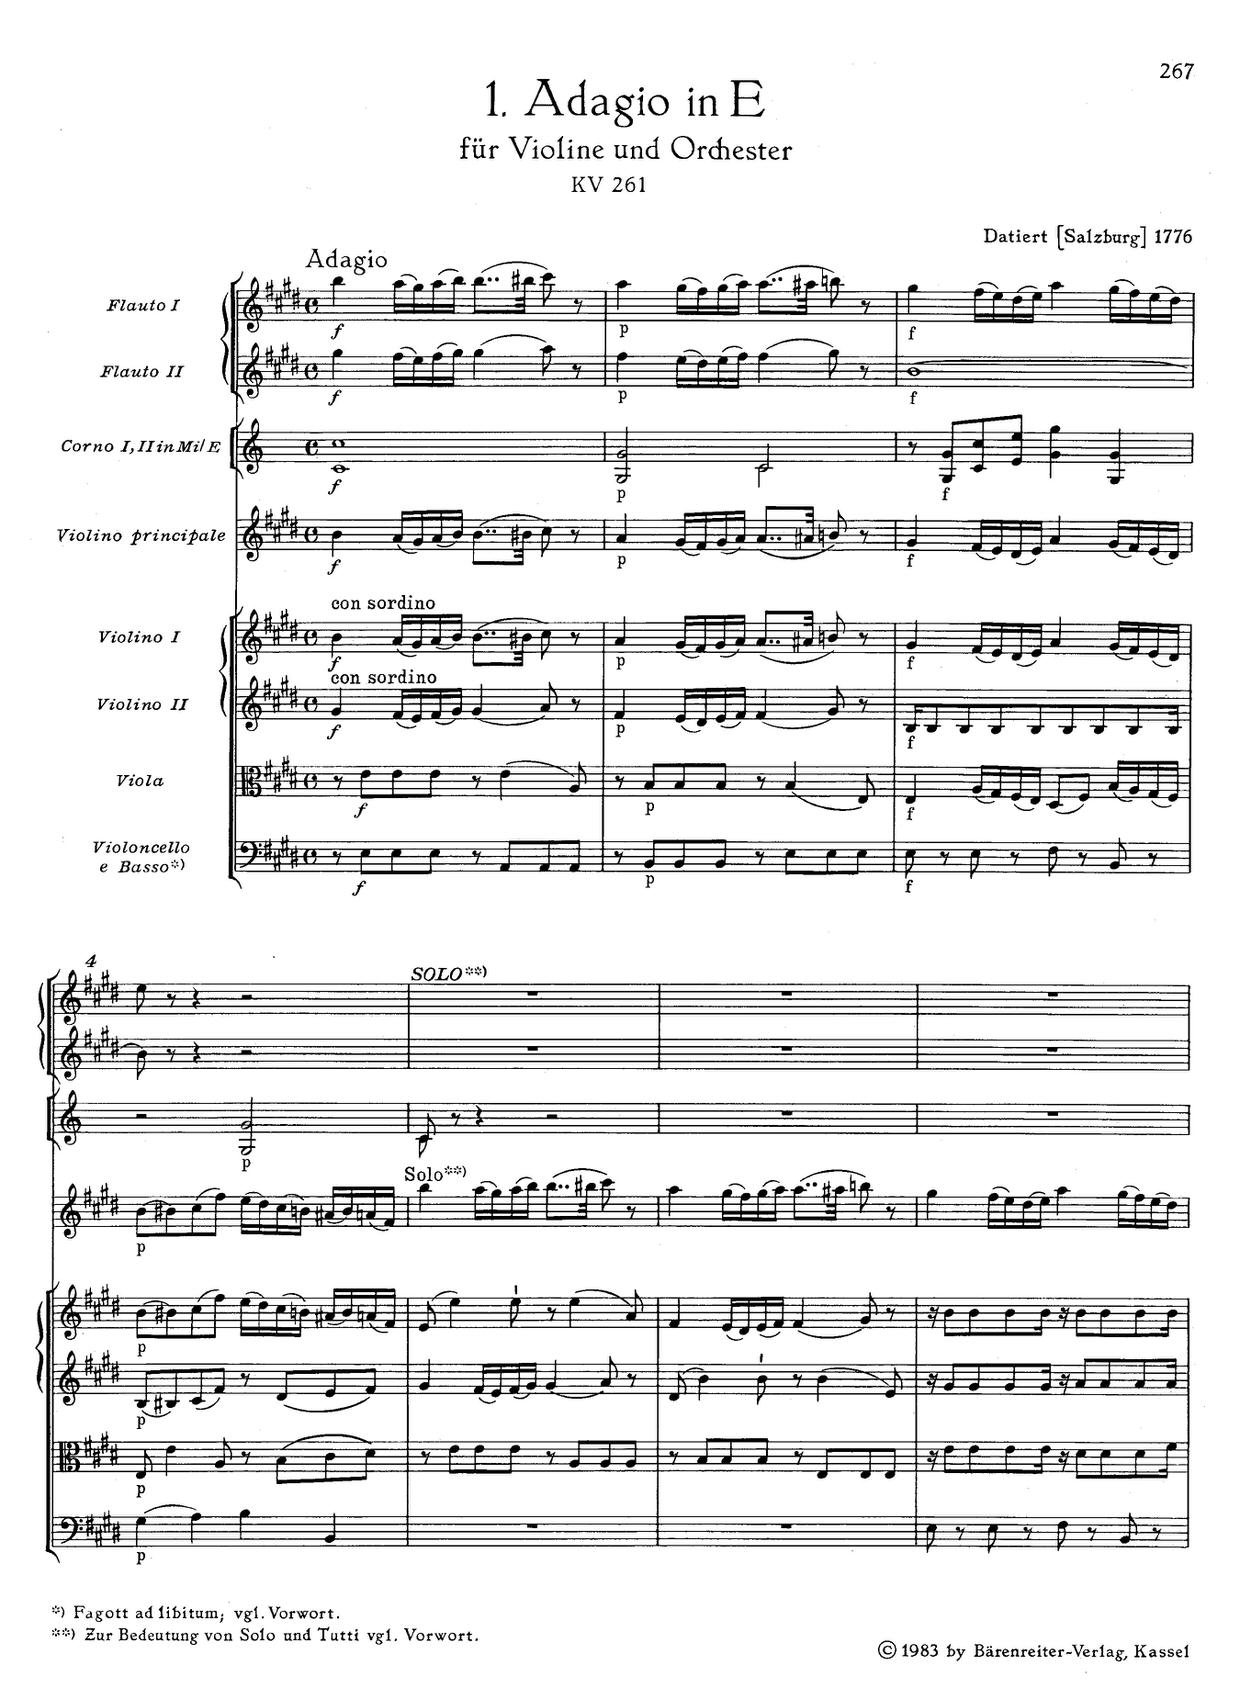 Adagio in E Major, K. 261琴譜